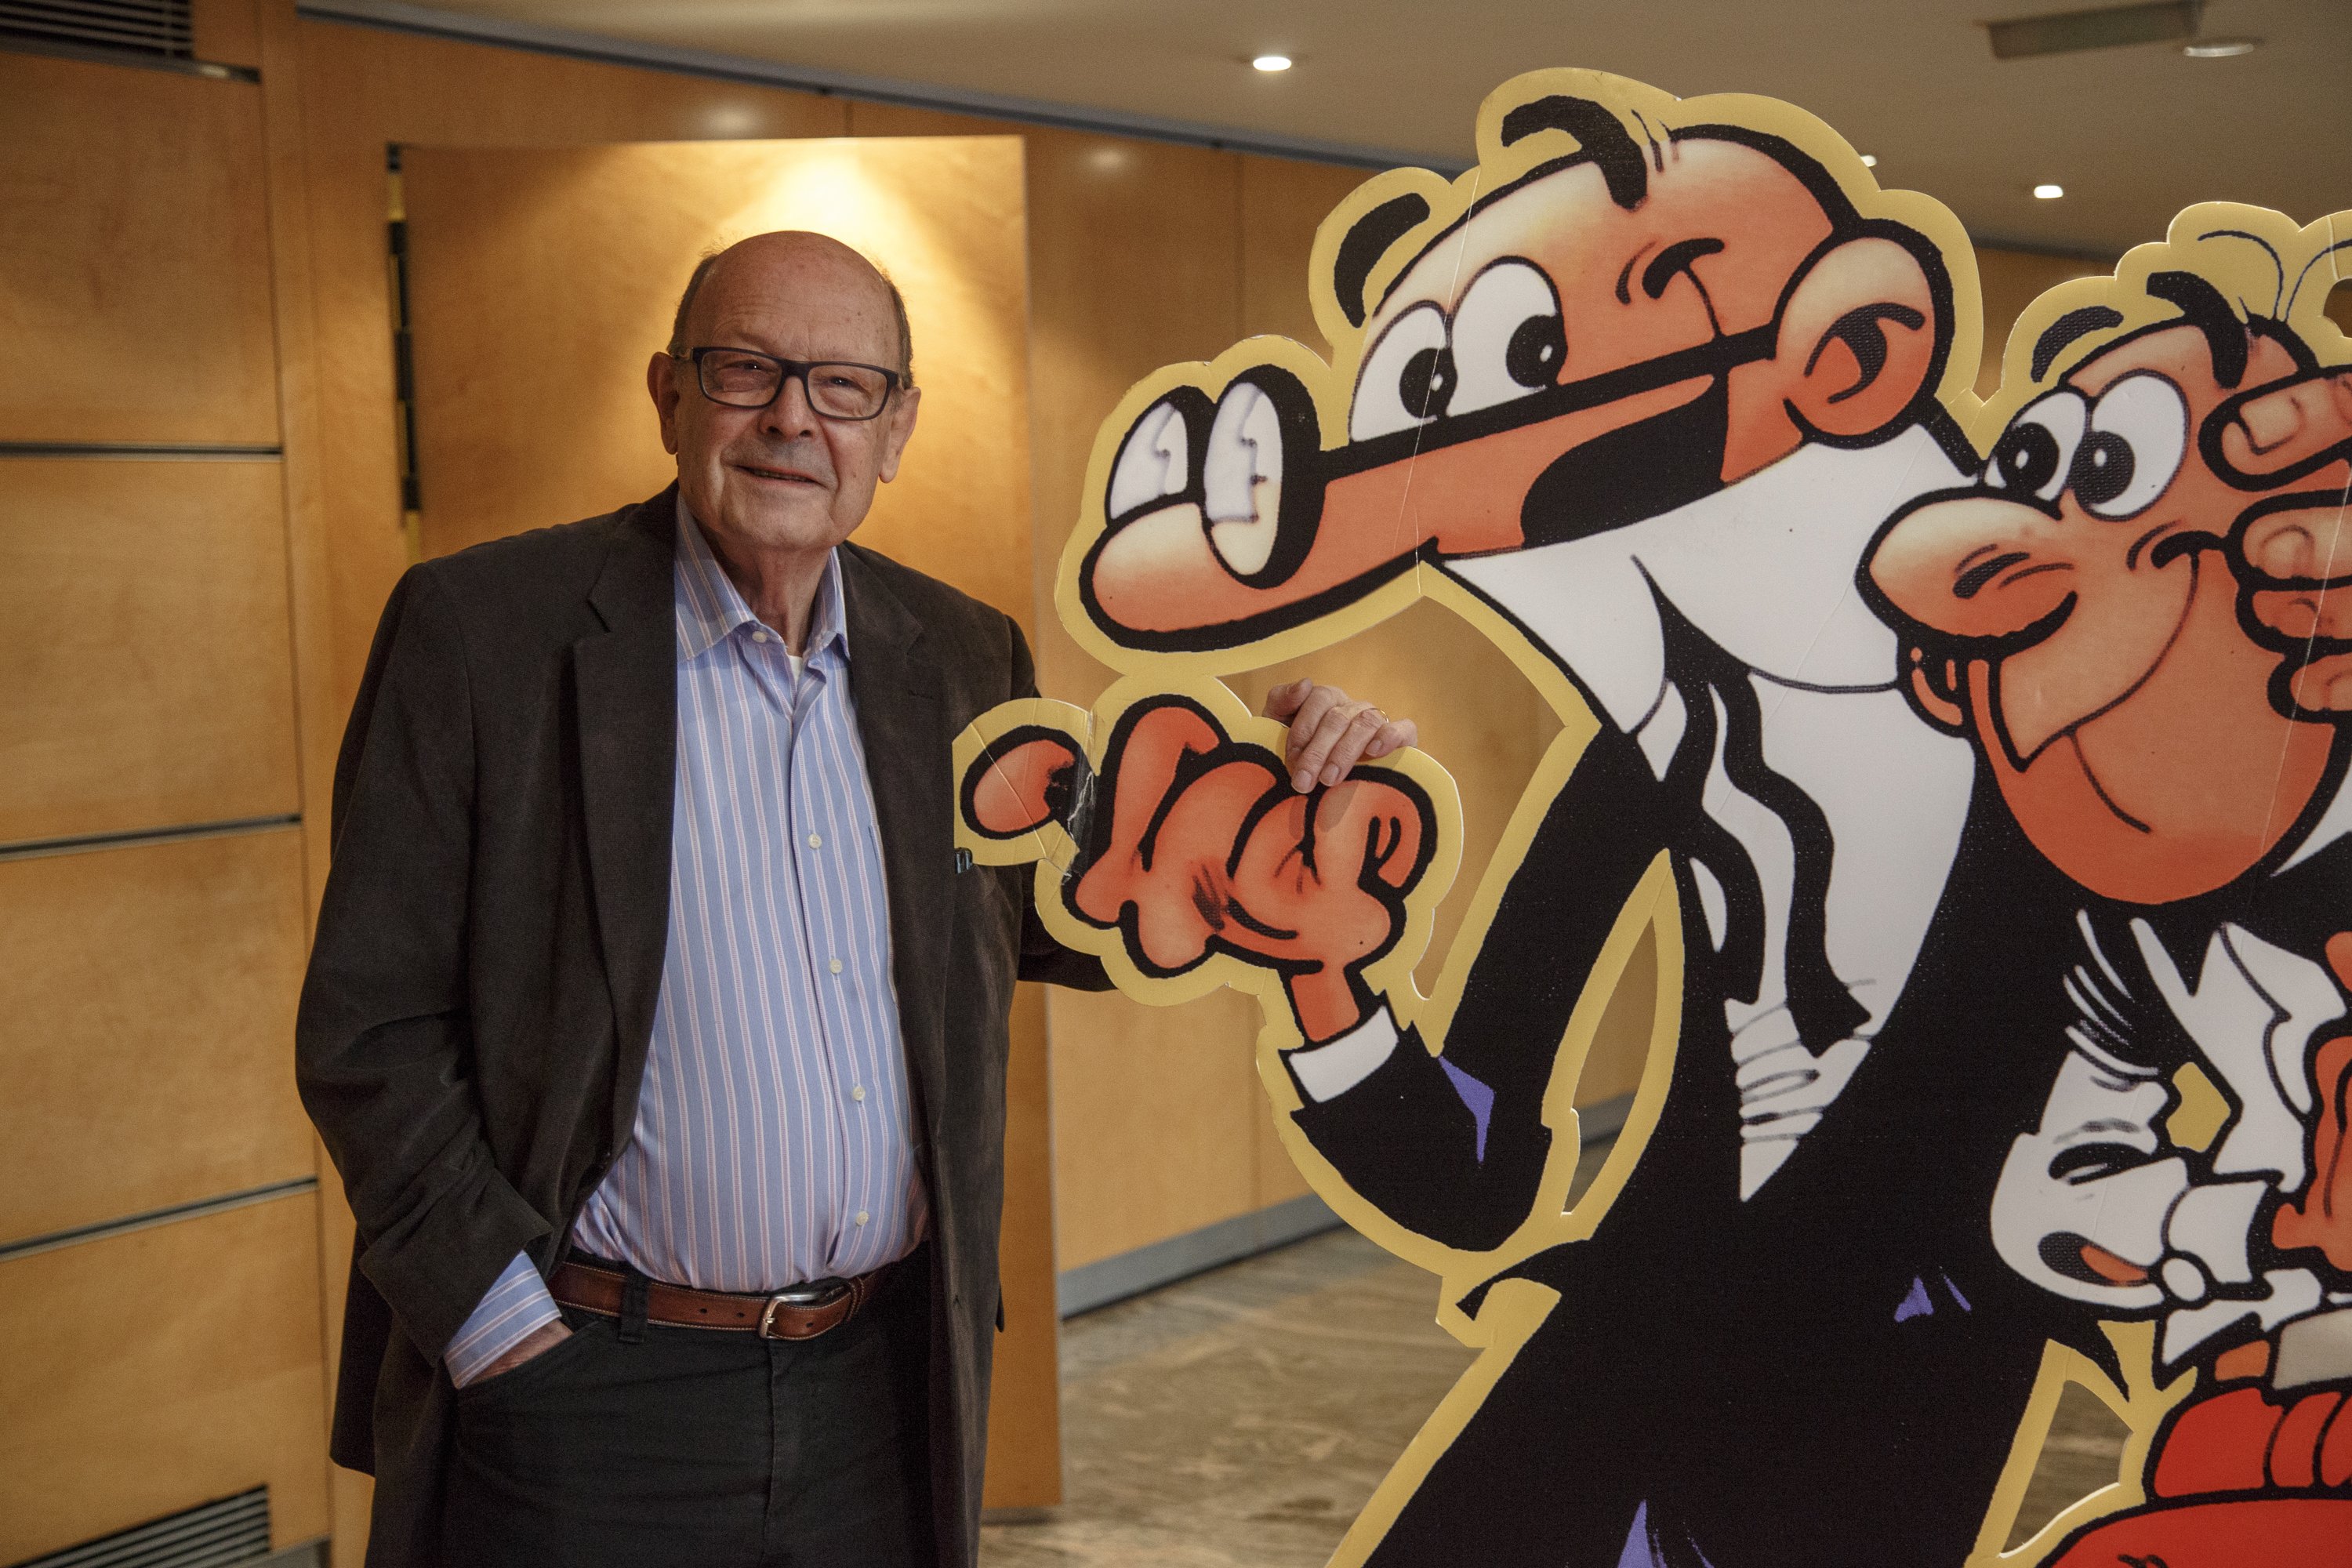 Bruguera publicará la última aventura de Mortadelo y Filemón creada por Francisco Ibáñez